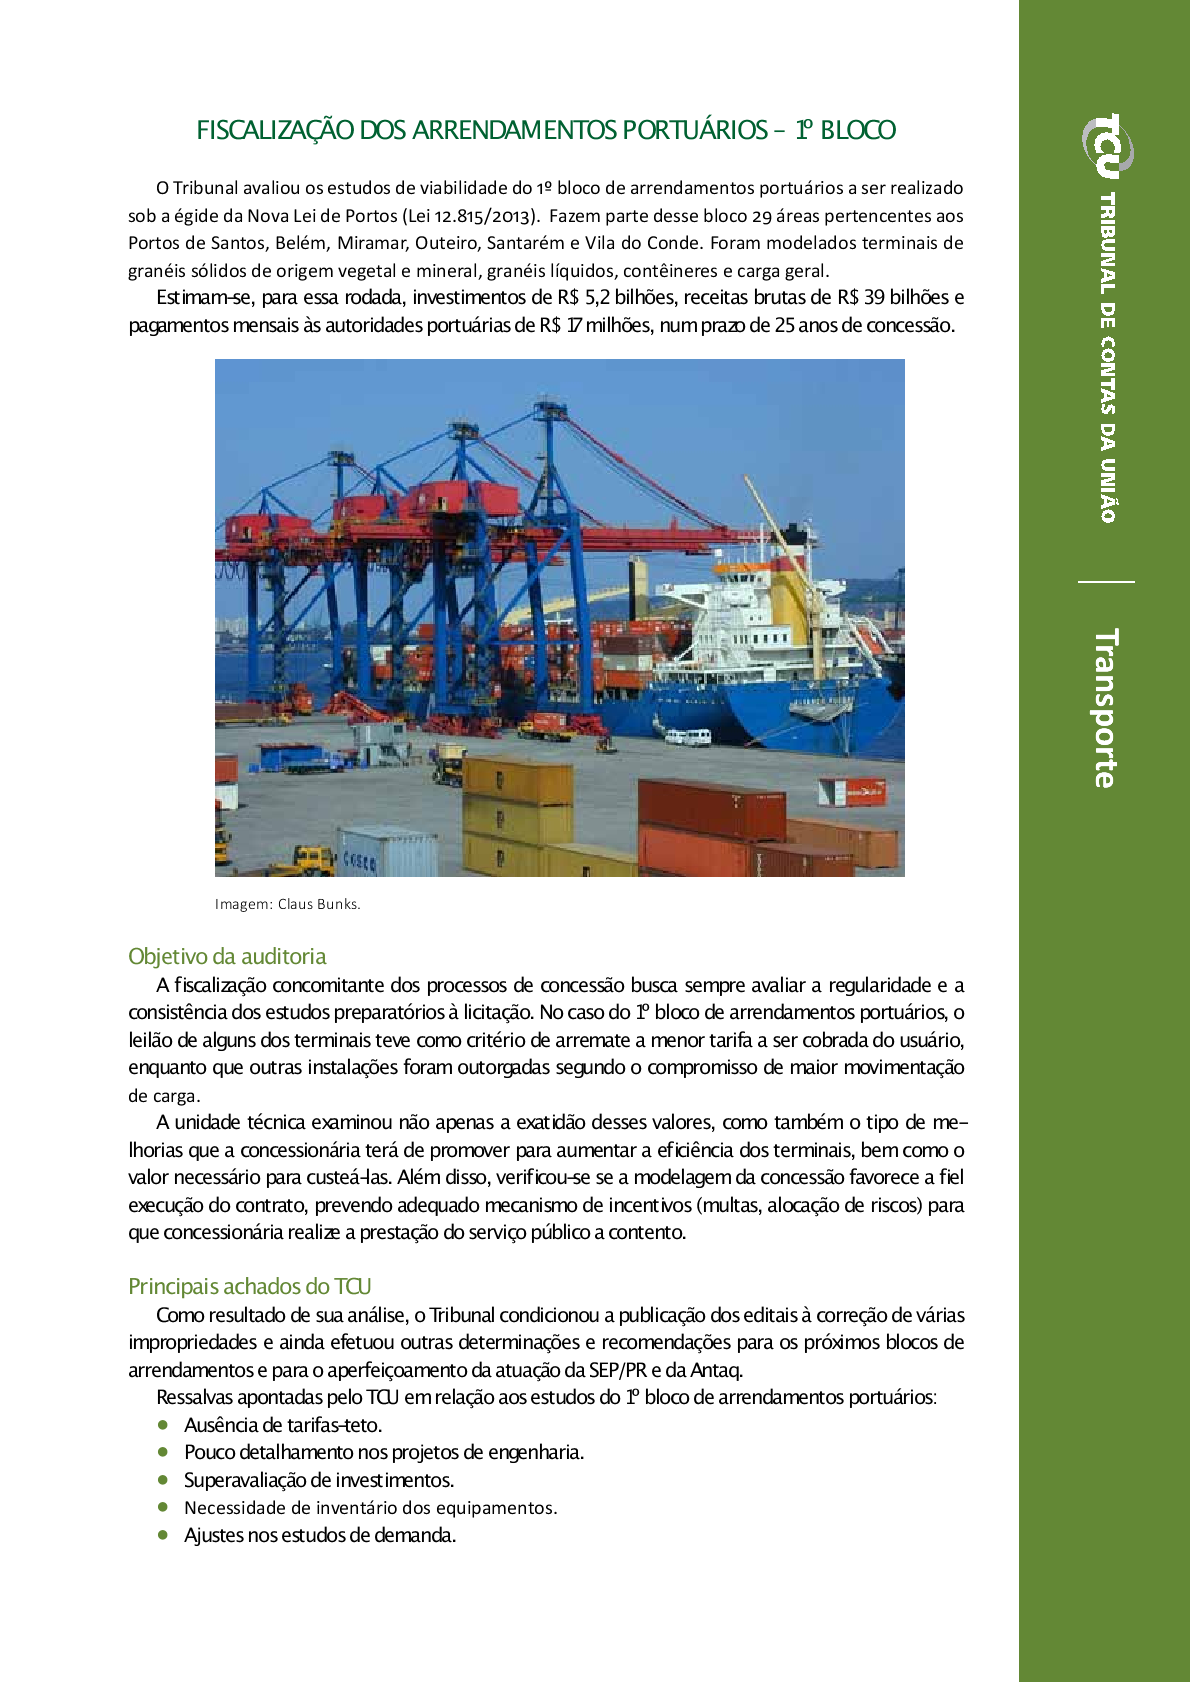 transporte_fiscaliza__o dos arrendamentos portu_rios_.png